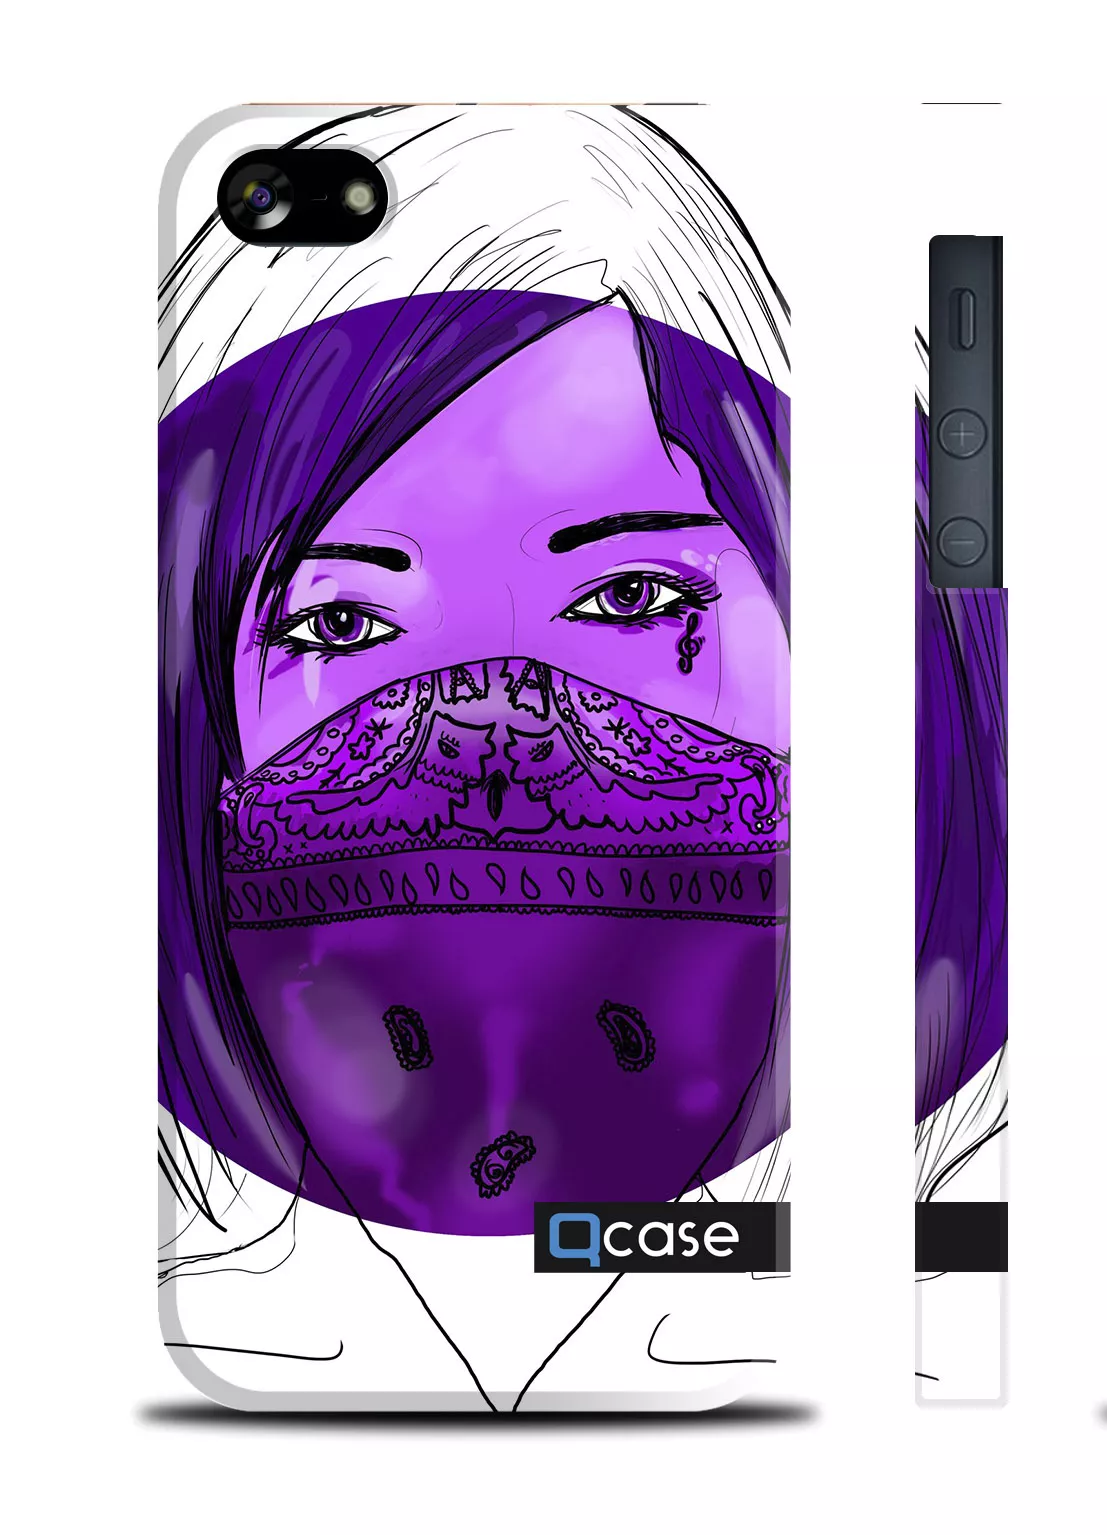 Чехол с авторским рисунком для Айфон 5/5S - Dange (Violet Girl)